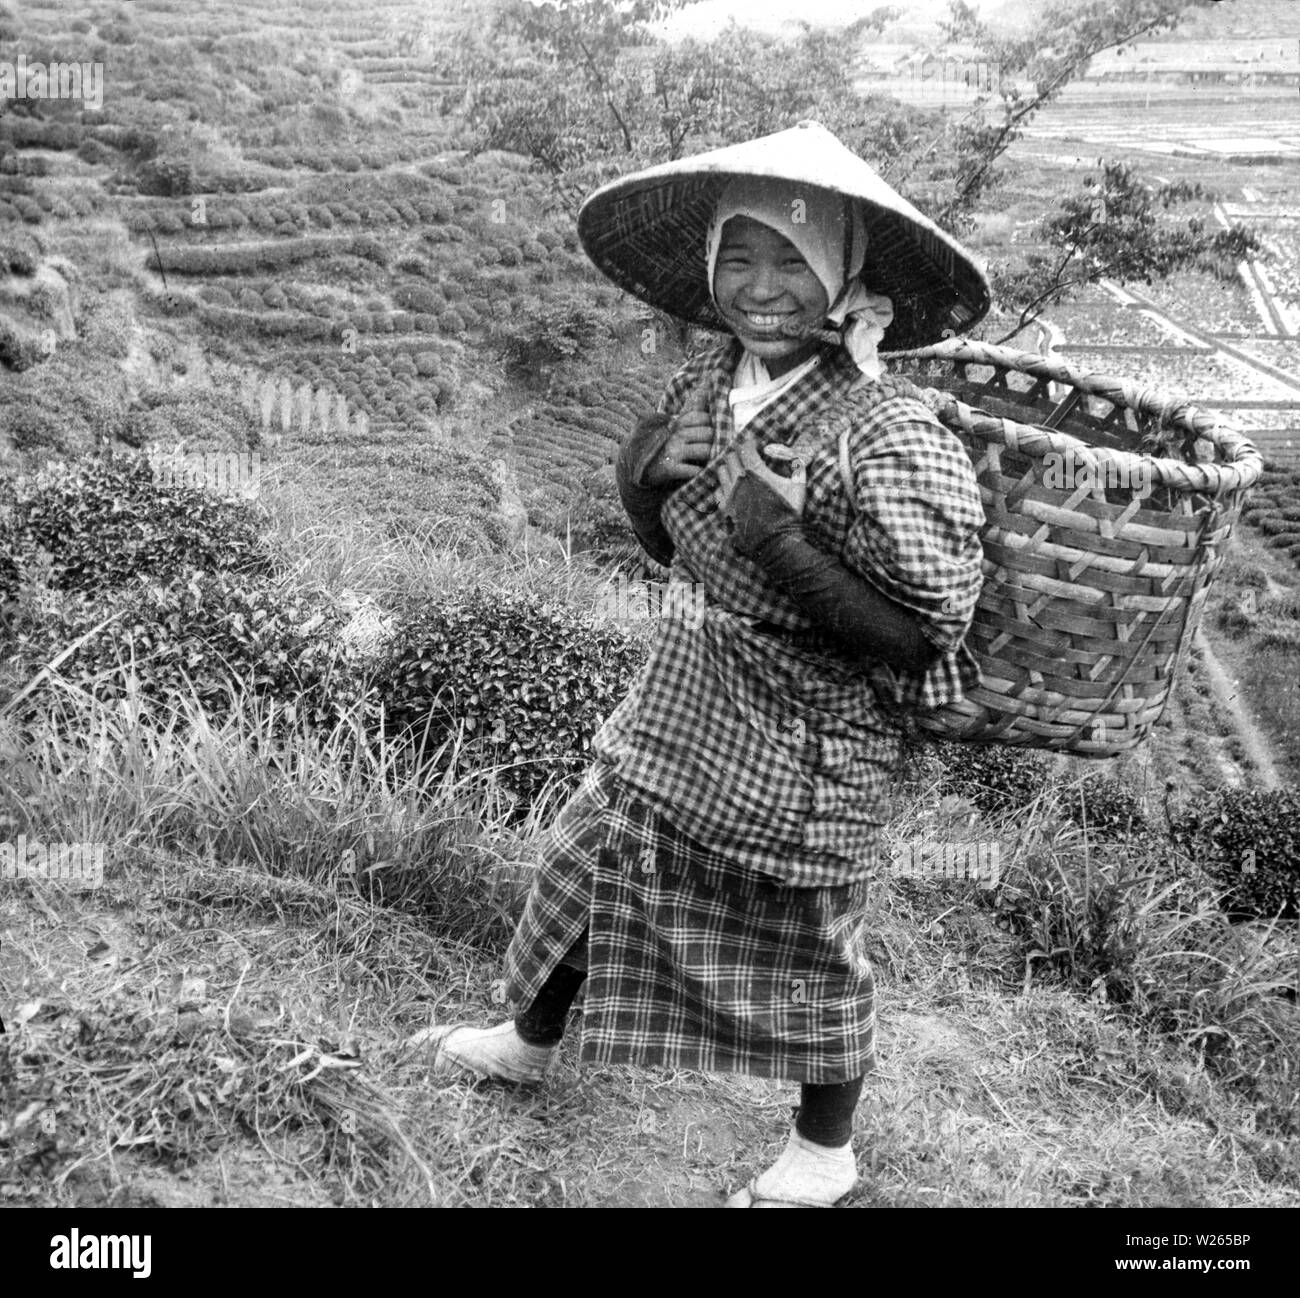 [ 1900 Japón - Alegre Selector de té japonés ] - sonriendo un selector de té llevando una cesta sobre los hombros y llevaba un sombrero cónico sugegasa, en algún lugar en la Prefectura de Shizuoka. Vintage del siglo 20 portaobjetos de vidrio. Foto de stock